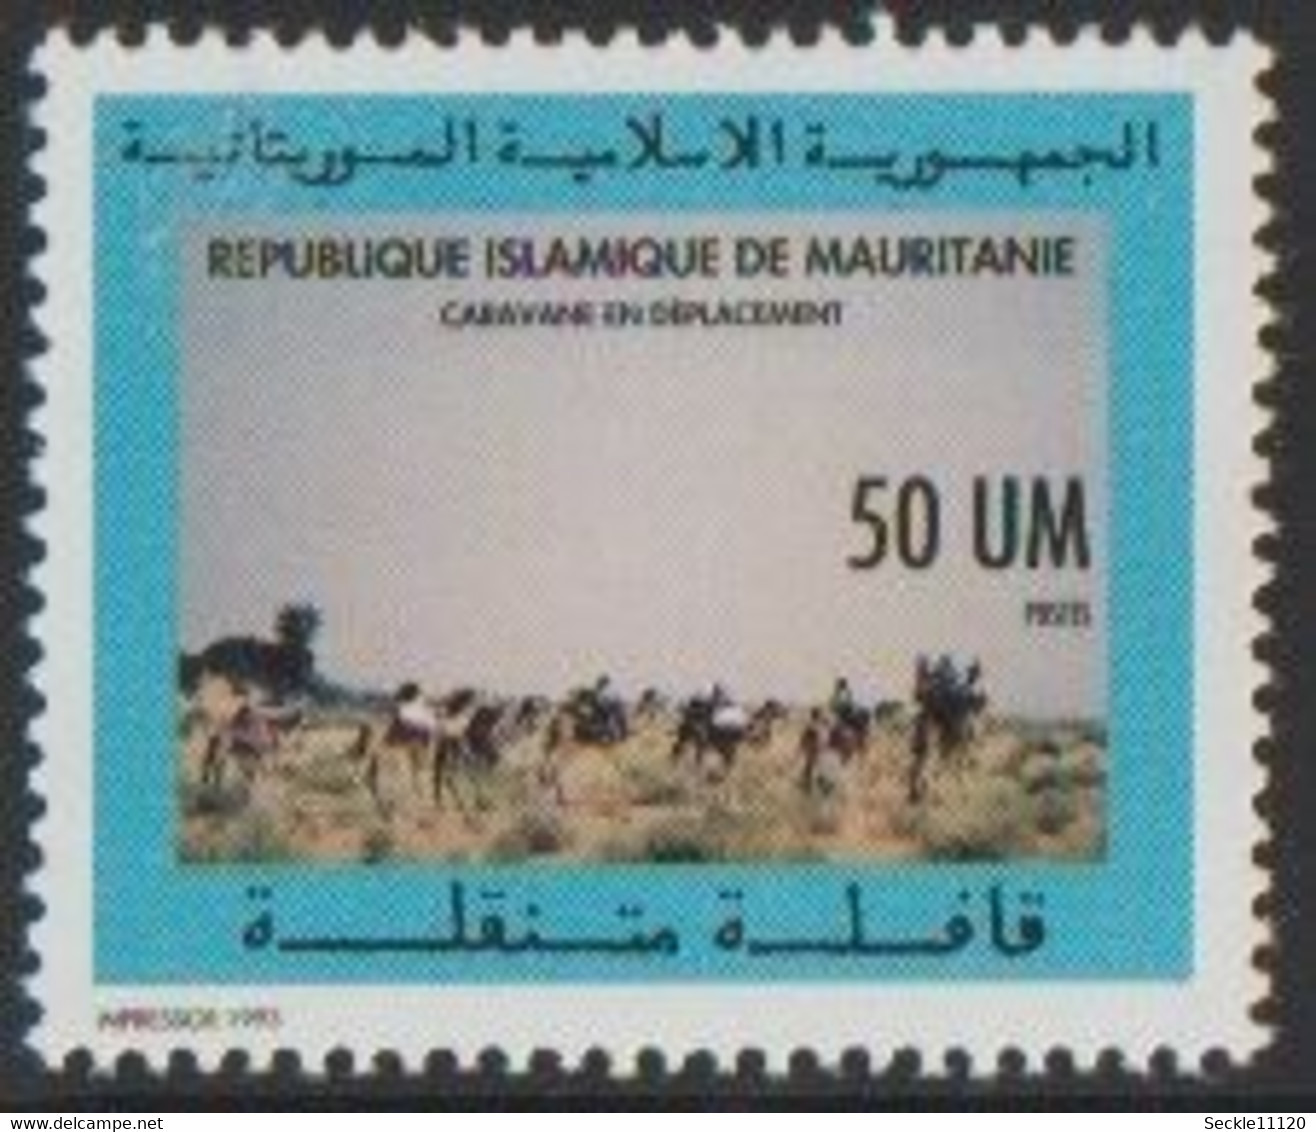 Mauritanie Mauritania - 1993 - 666 - Caravane - MNH - Mauritanie (1960-...)